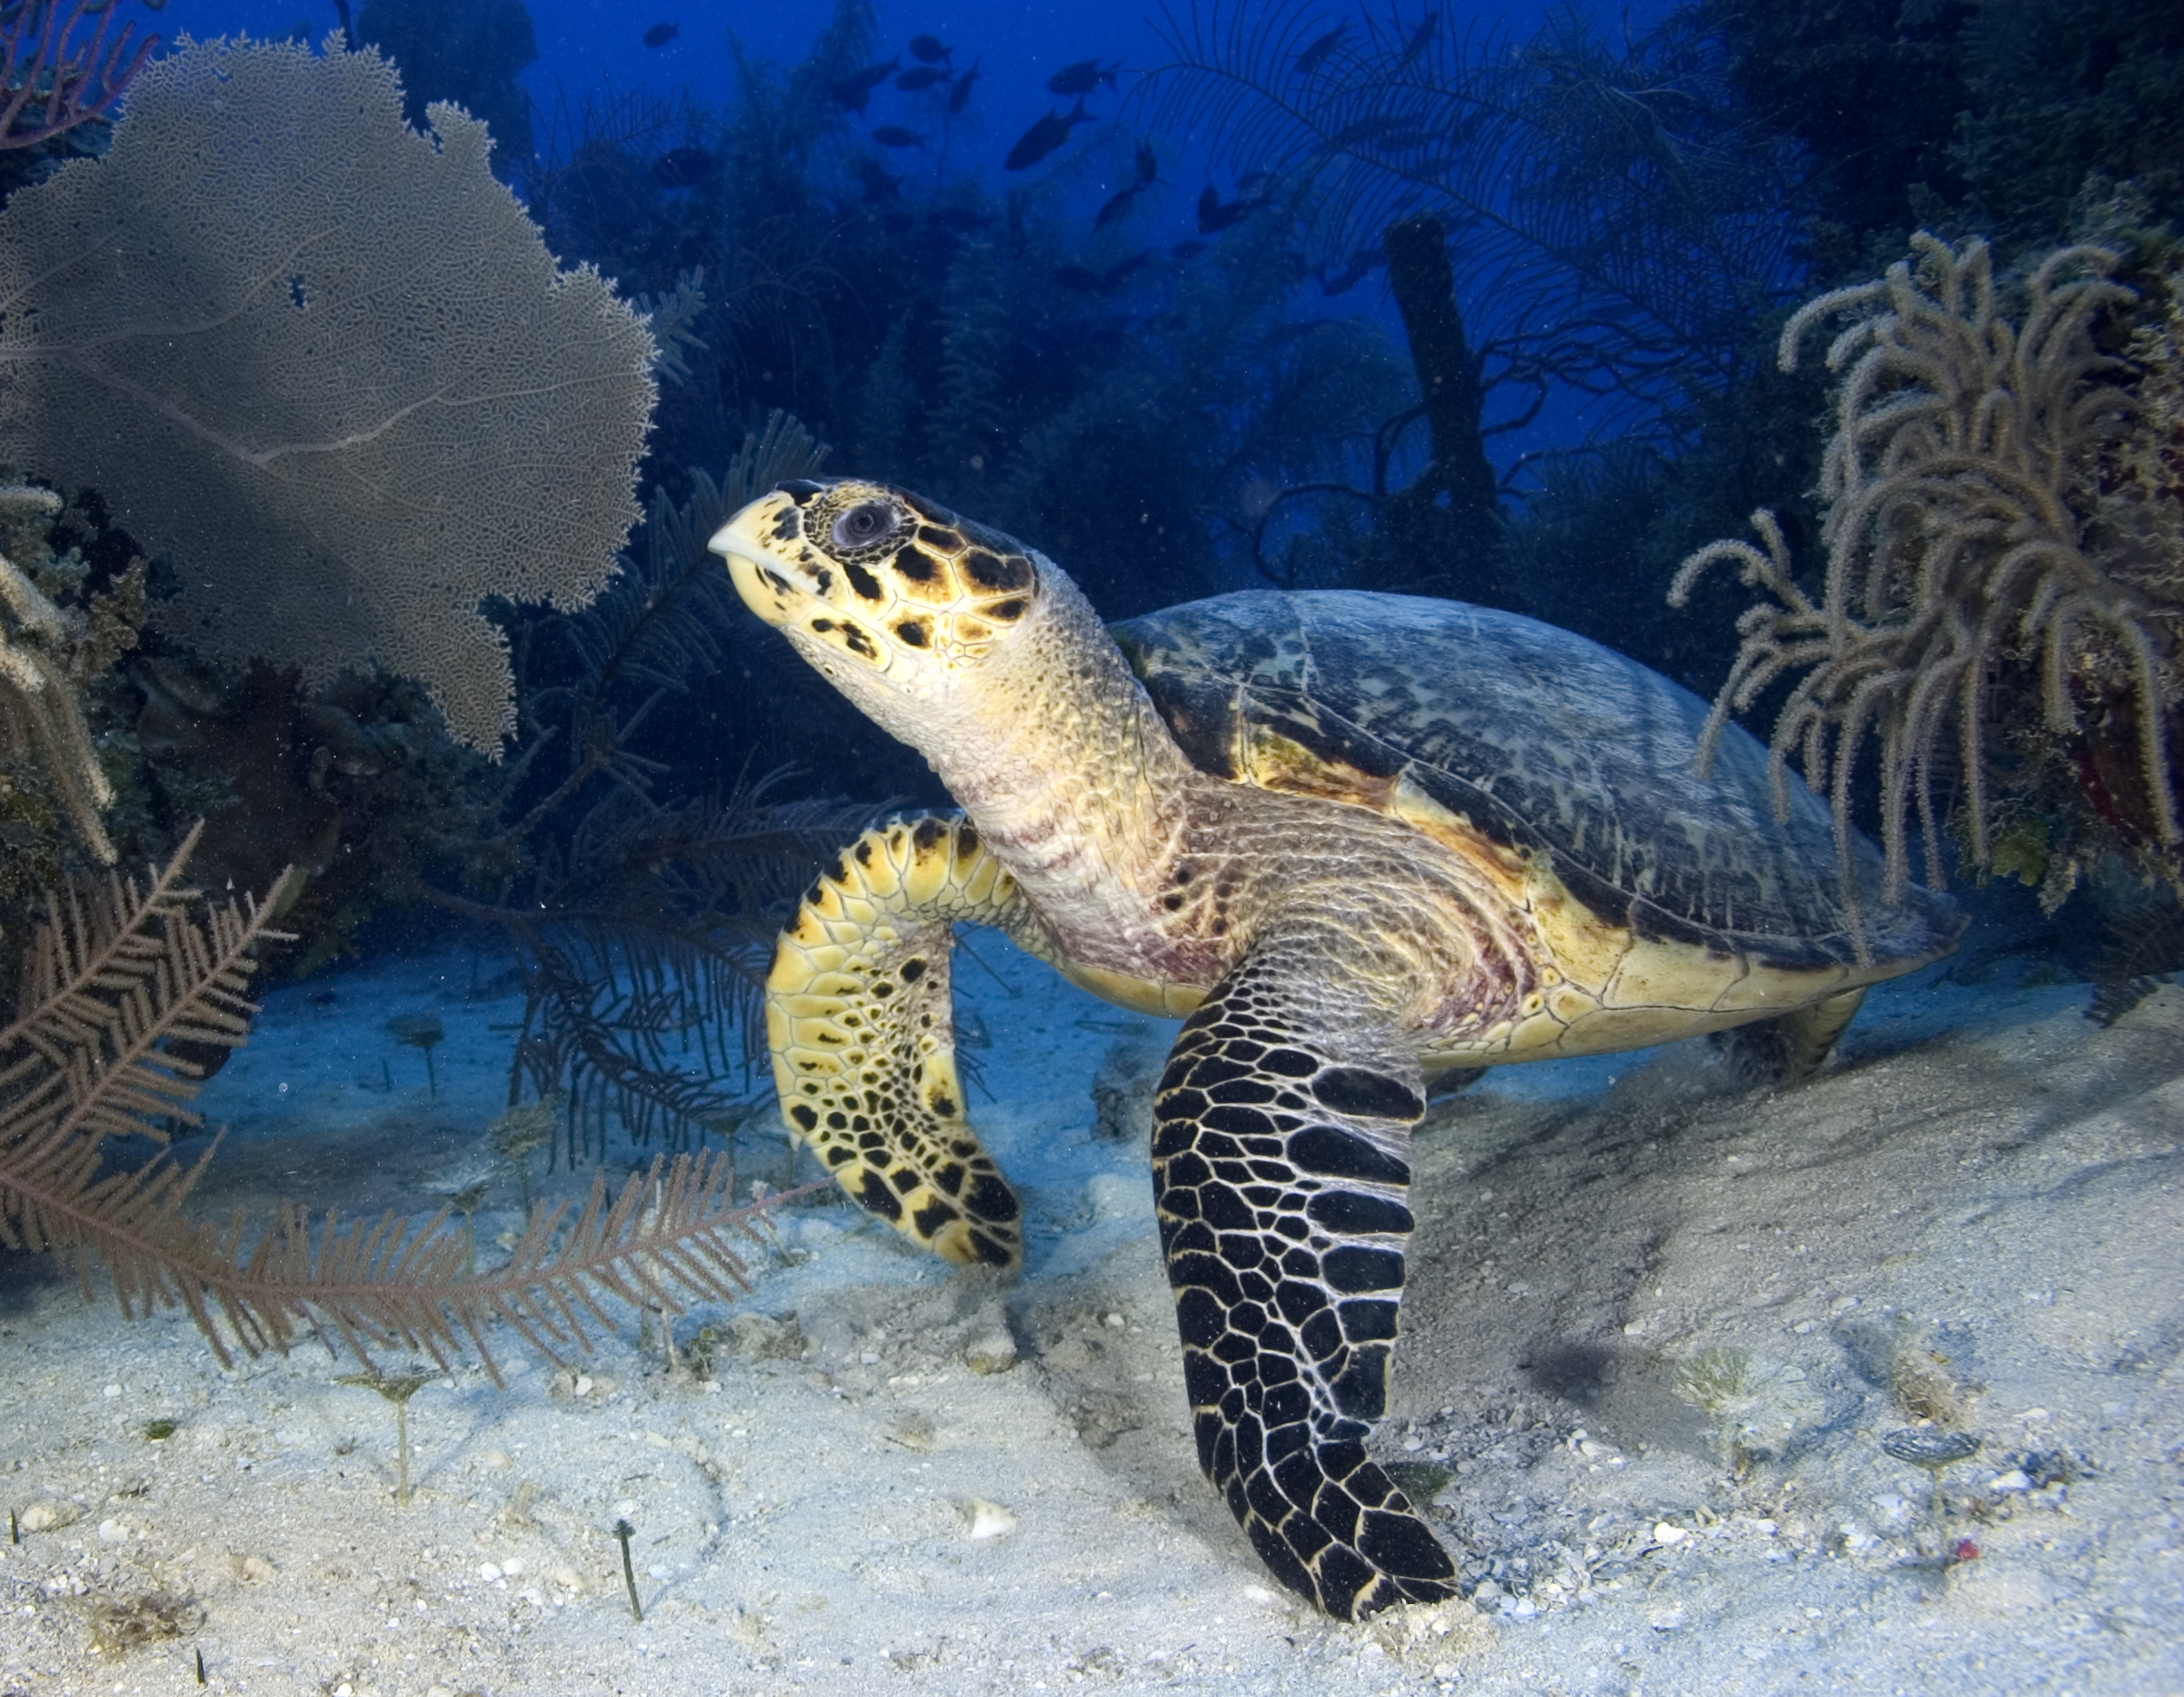 Especies de tortugas en peligro de extinción se encuentran en esta área protegida. - Foto Noel Lopez/WCS